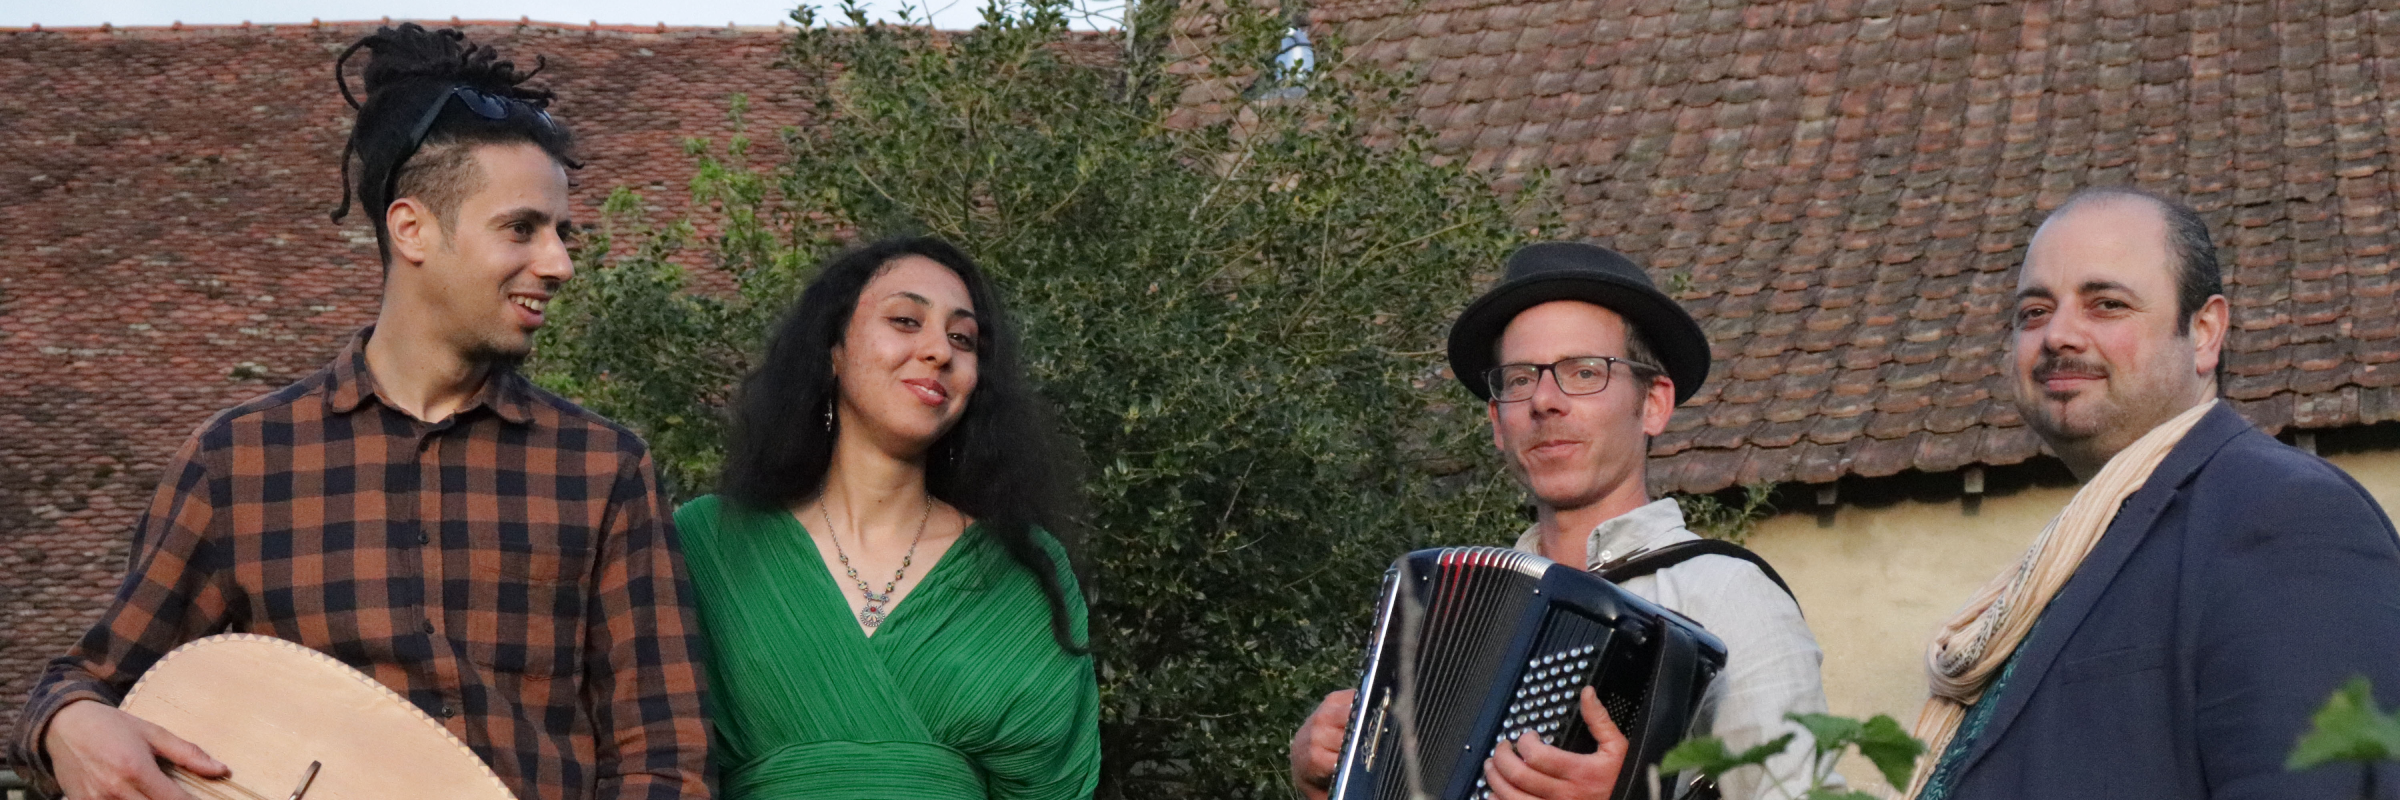 Compagnie Samar, groupe de musique Musiques du monde en représentation à Doubs - photo de couverture